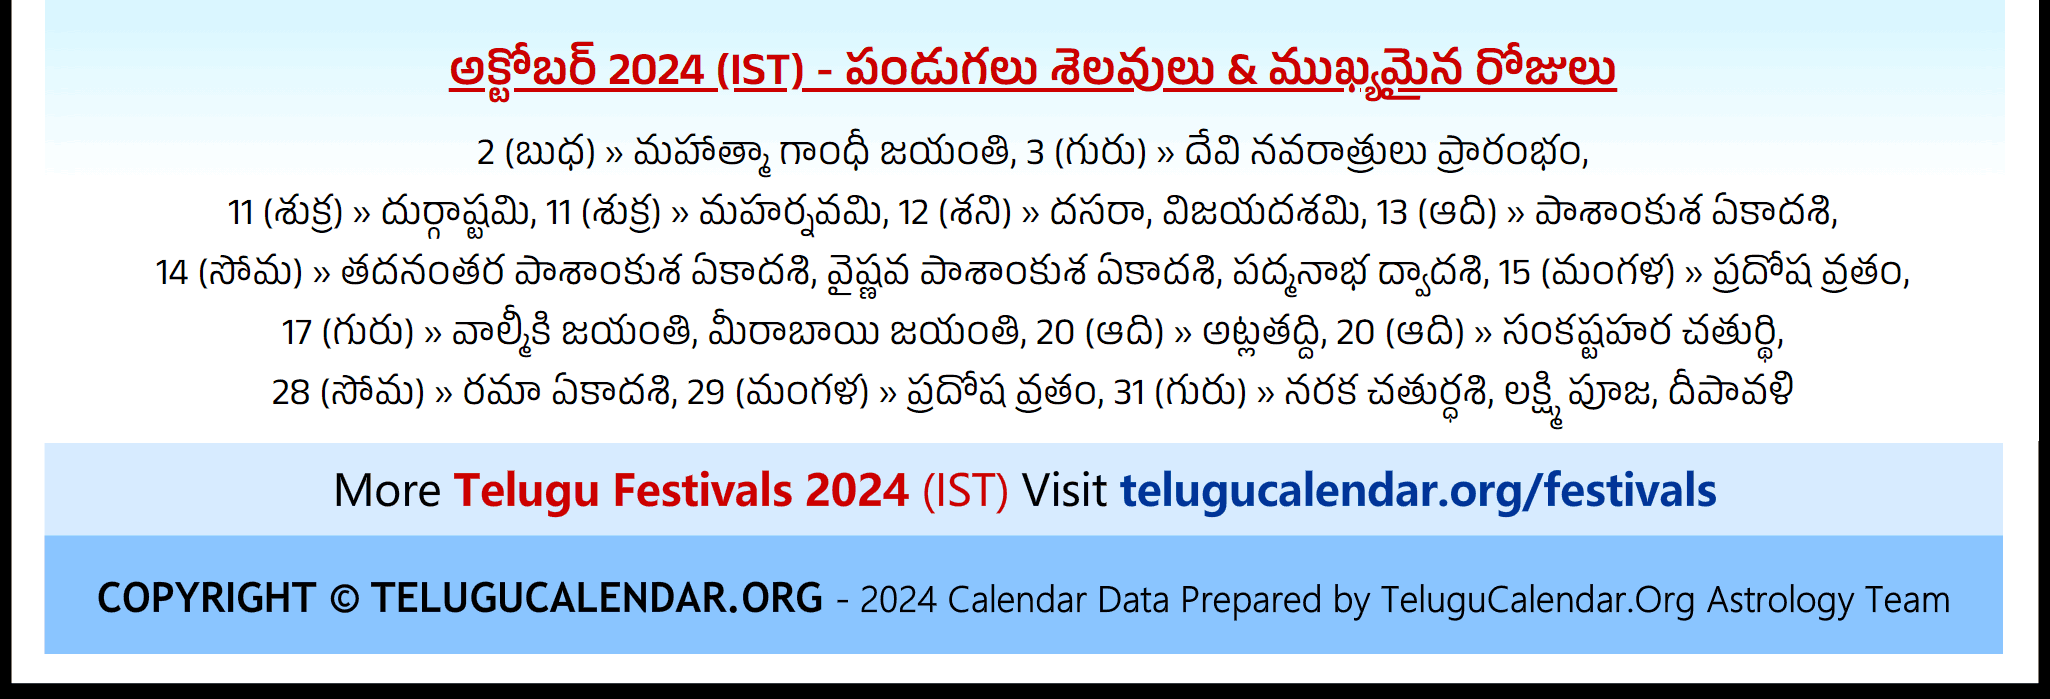 Telugu Festivals (IST) 2024 October